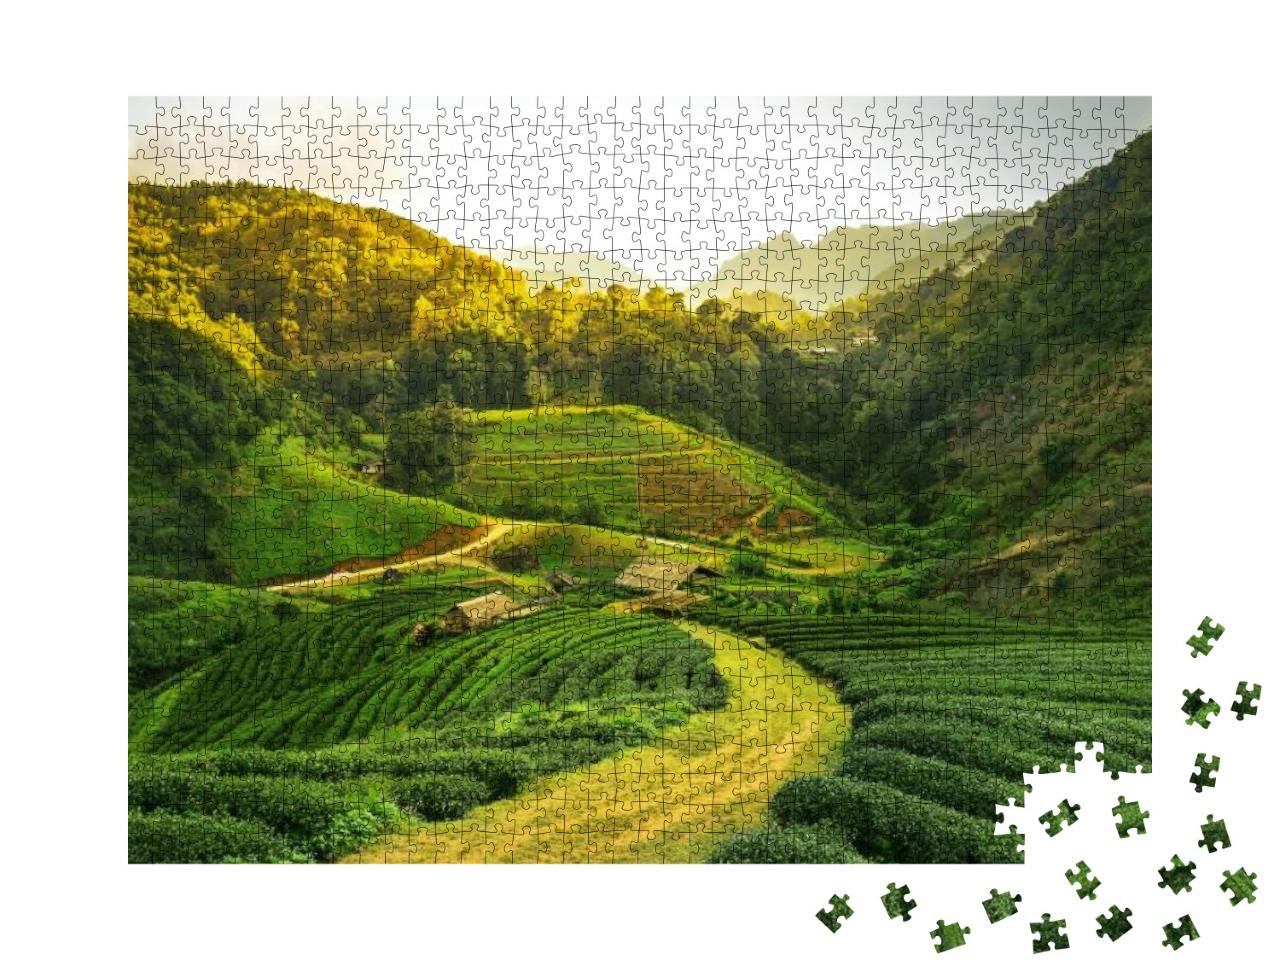 Sunrise View of Tea Plantation Landscape... Jigsaw Puzzle with 1000 pieces